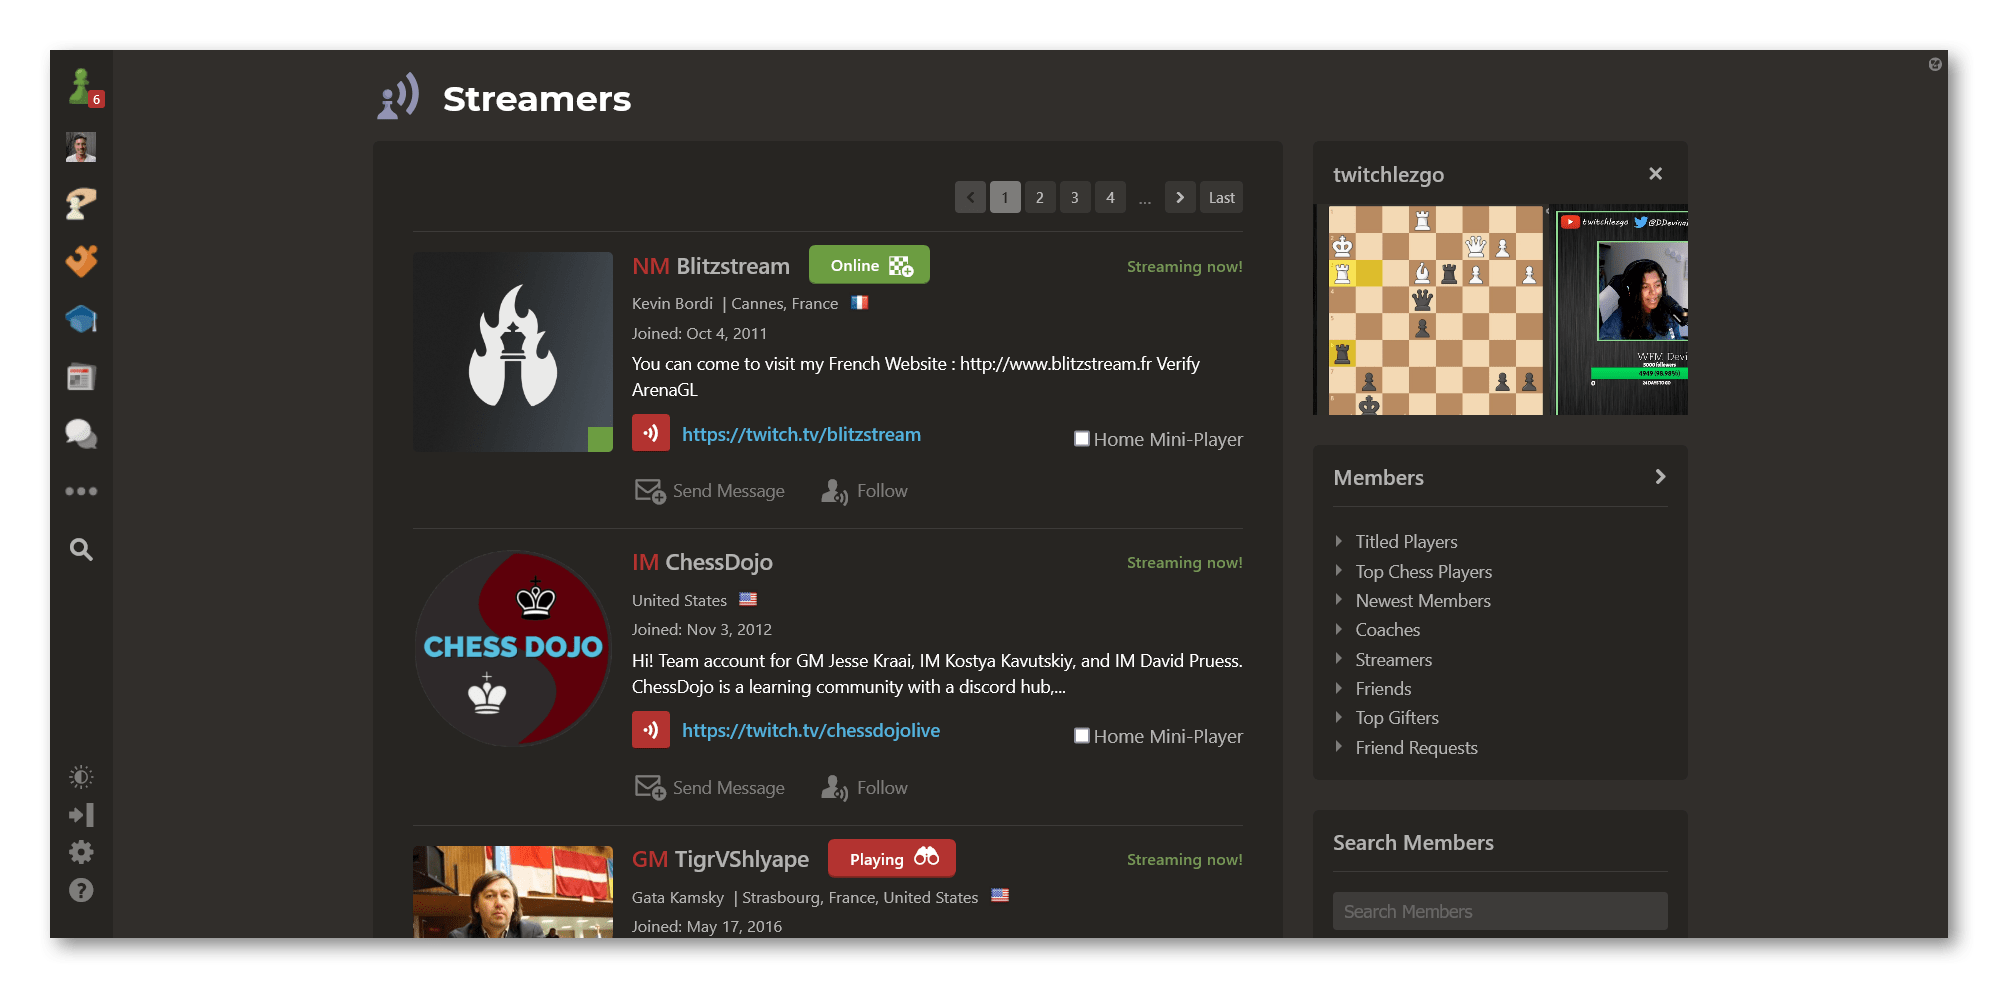 ChesscomES - Streamer Profile & Stats